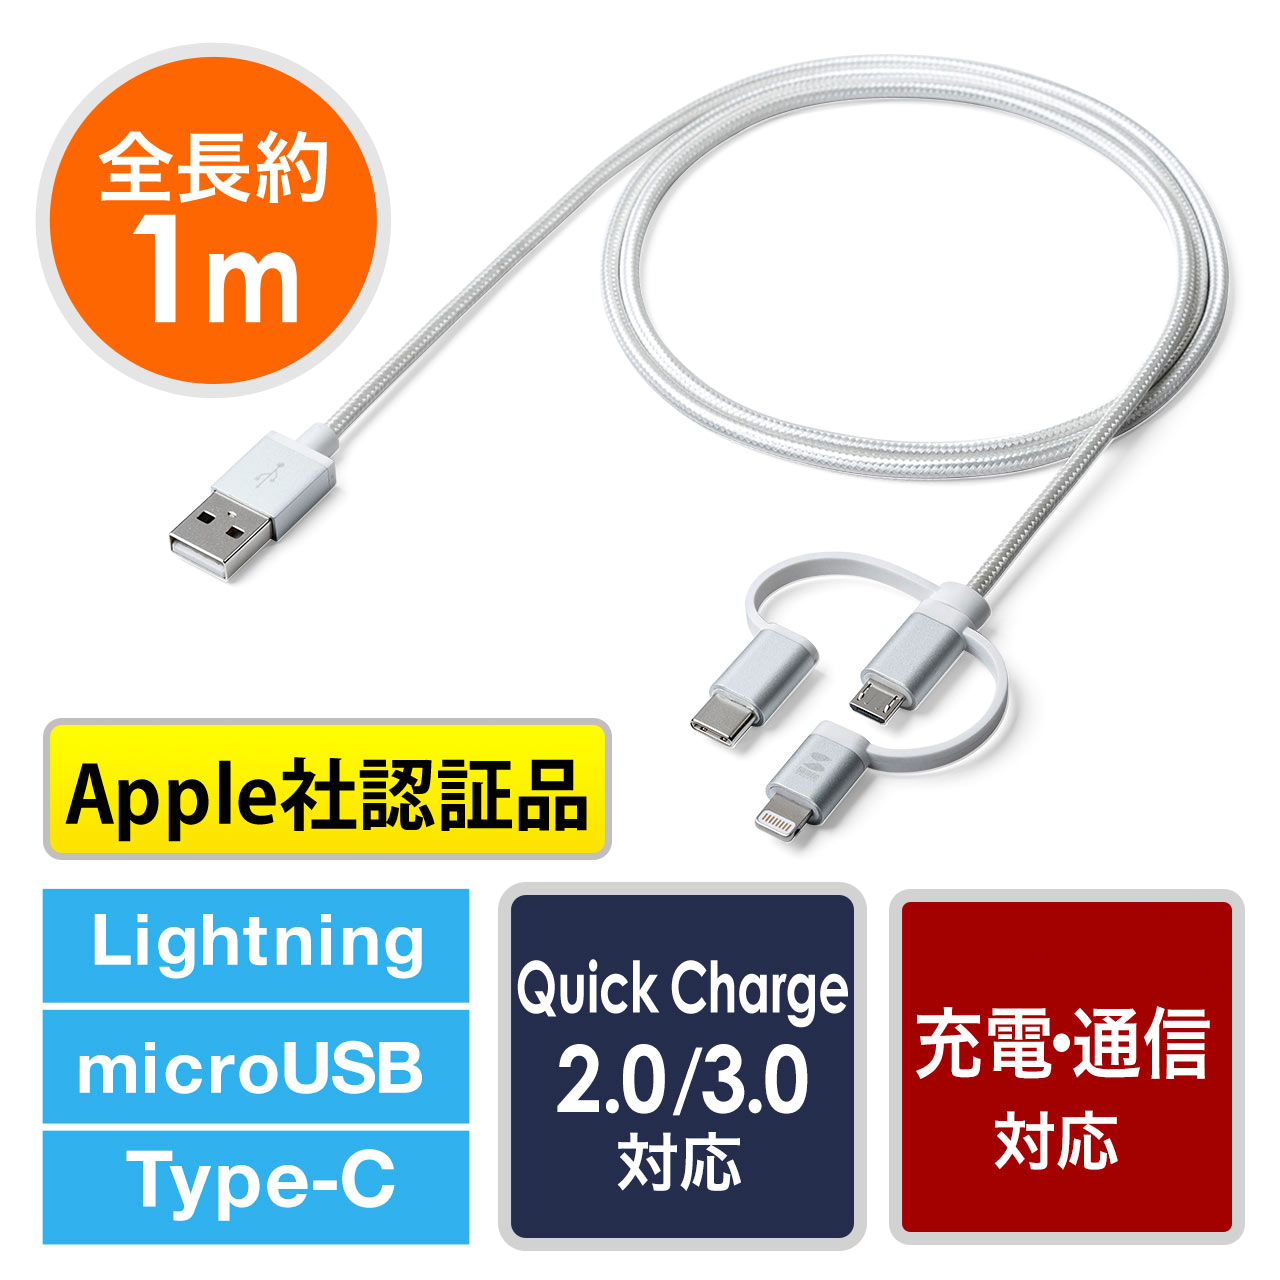 【ネコポス送料無料】3in1 ライトニング マイクロUSB USB  Type-Cケーブル（Lightning・microUSB・Type-C対応・充電通信・1本3役） 500-IPLM019